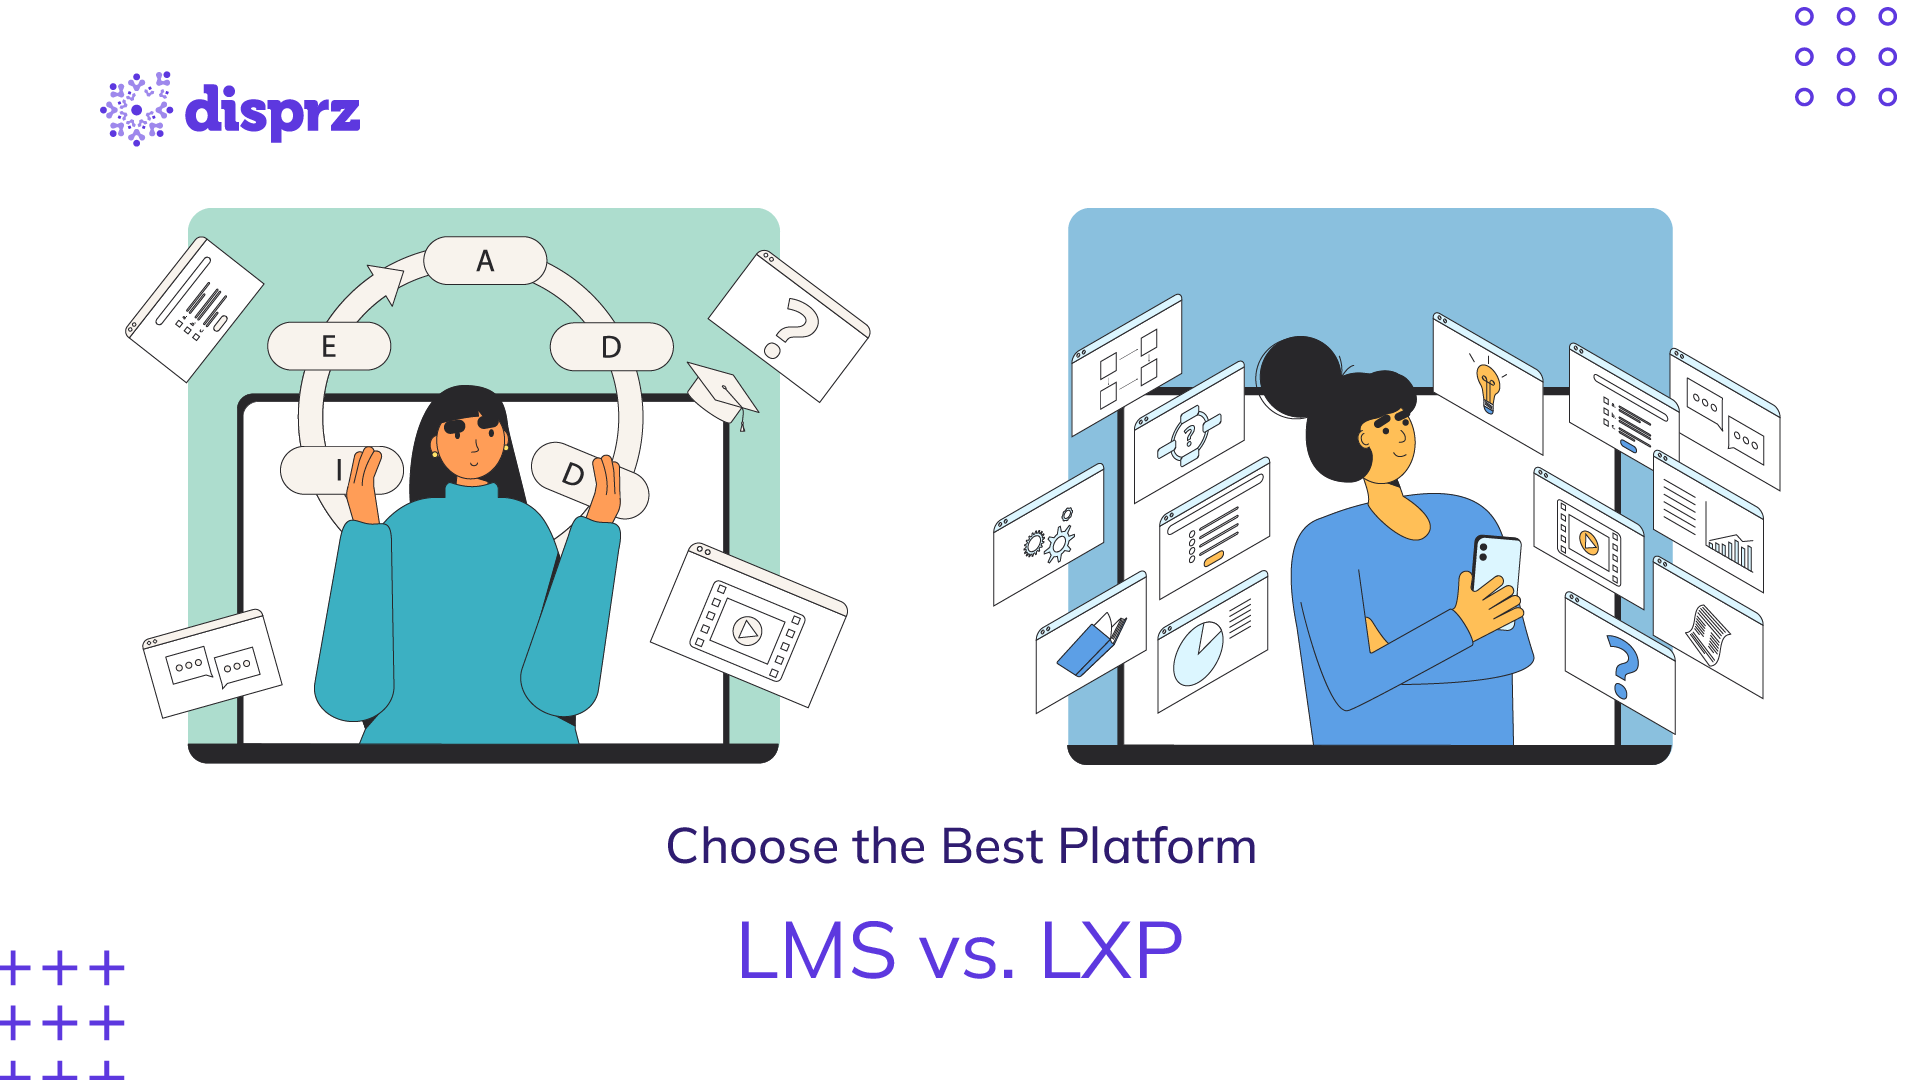 Choose the Best Platform - LMS Vs LXP